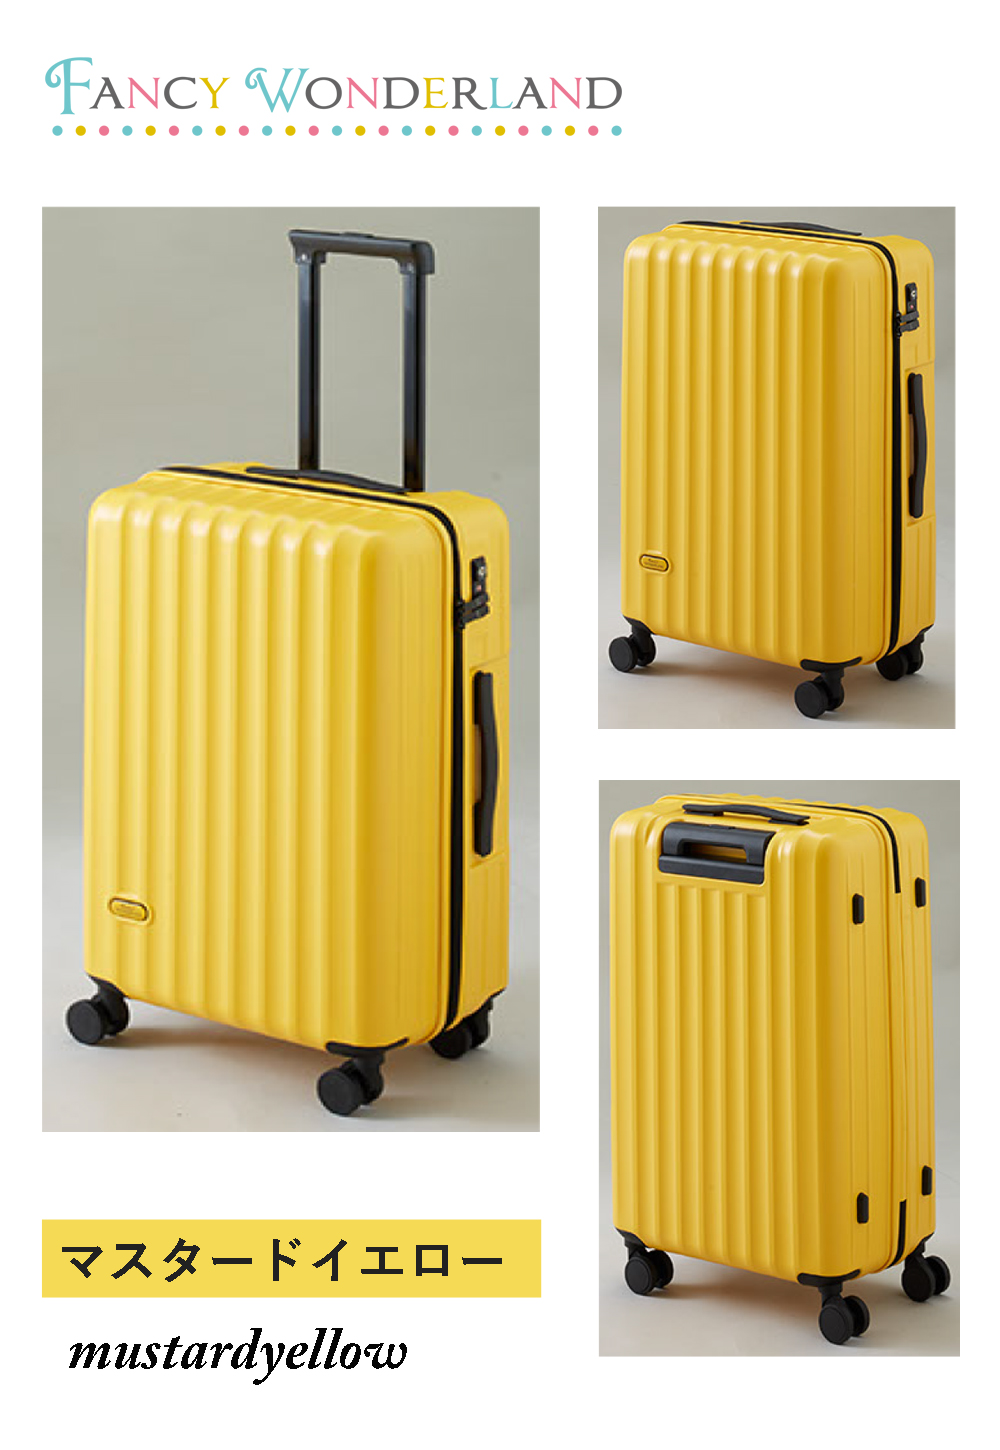 キャリーバッグ スーツケース キャリーケース lサイズ l ハード ty2301-l ファスナー おしゃれ かわいい 7泊 10泊 軽量 海外旅行  tsa fancywonderland